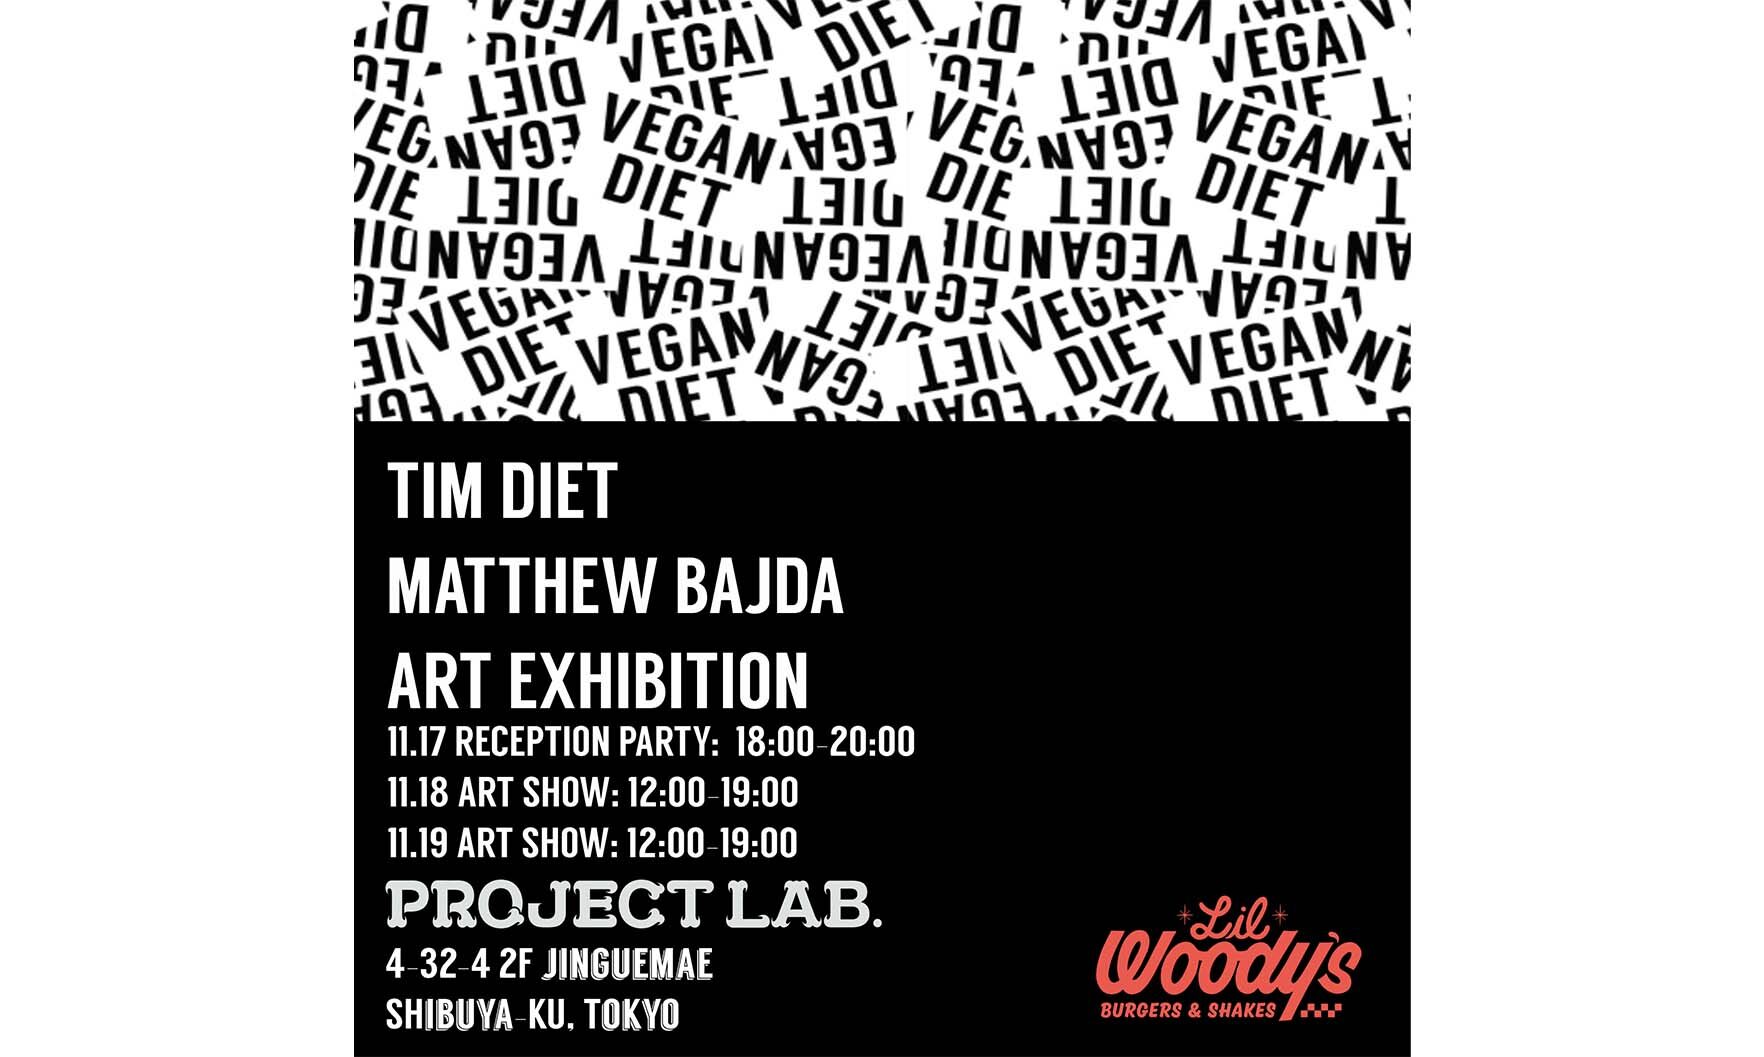 アーティストデュオ・VEGAN DIET、東京のPROJECT LAB.で展示開催